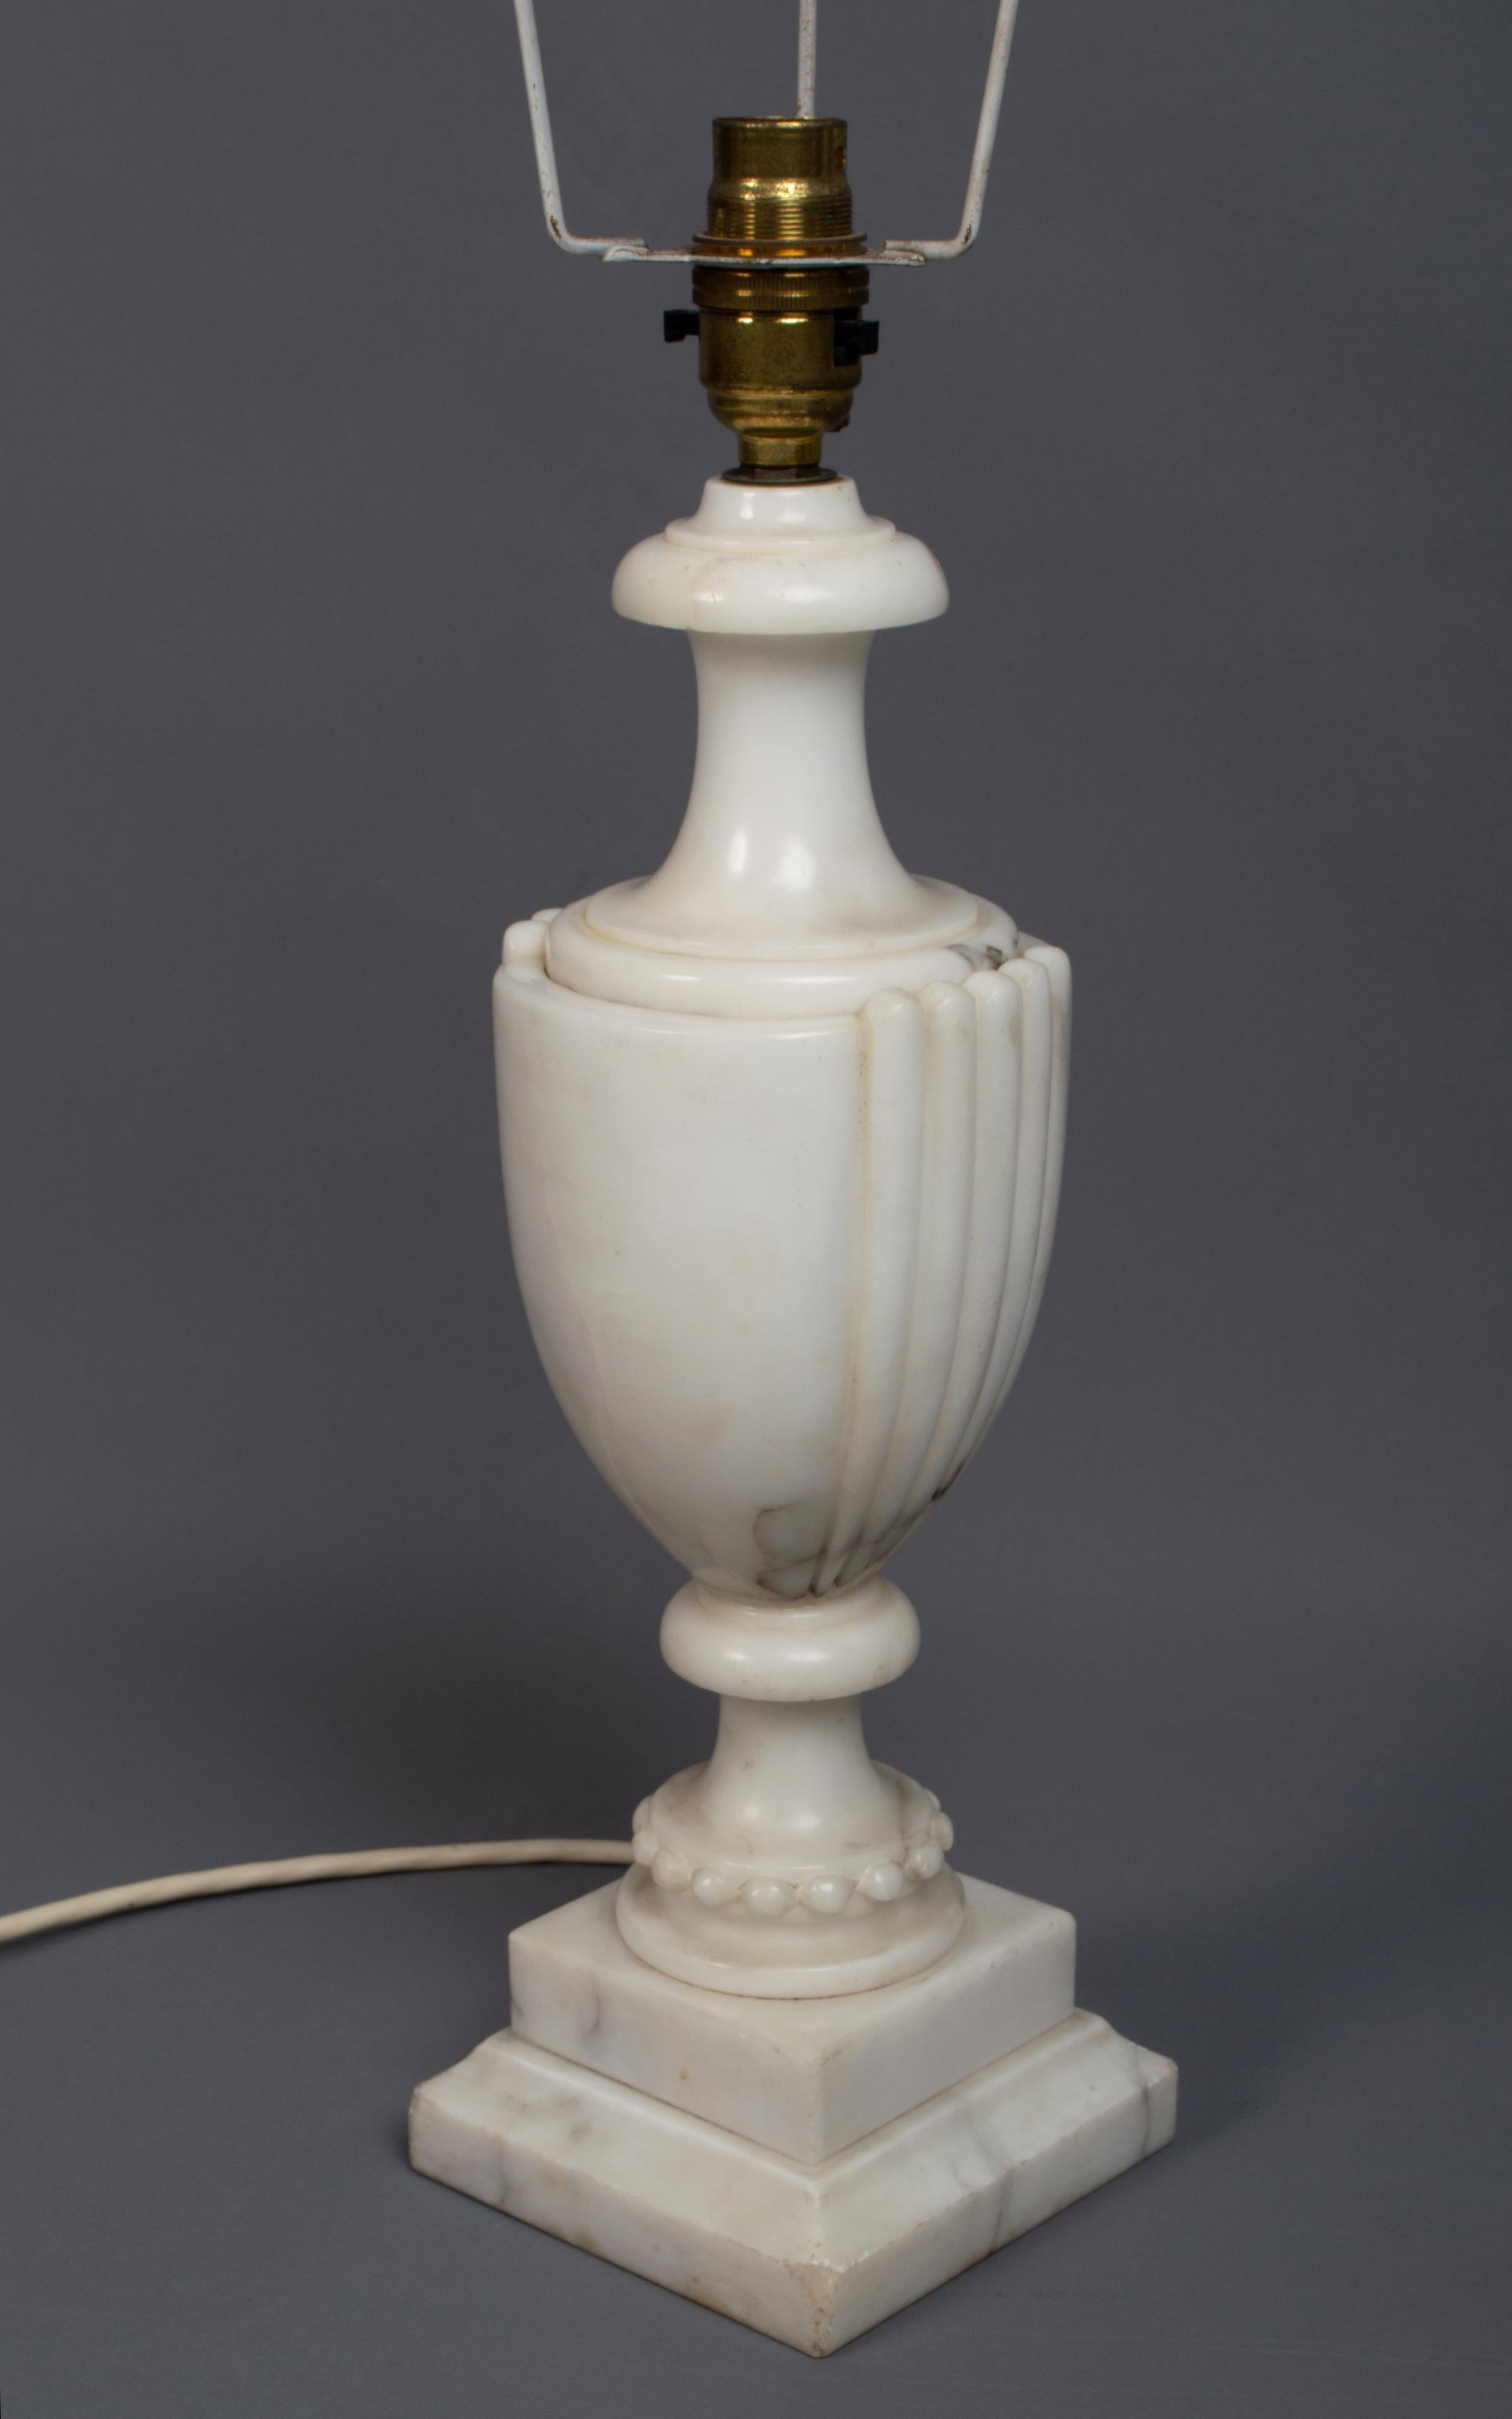 Lampe de table néoclassique en marbre en forme d'urne Italie, C.1950

Lampe de table néoclassique en forme d'urne. Exemple en marbre veiné sur une base carrée étagée.

En très bon état proportionnel à l'âge, signes mineurs d'usure aux coins de